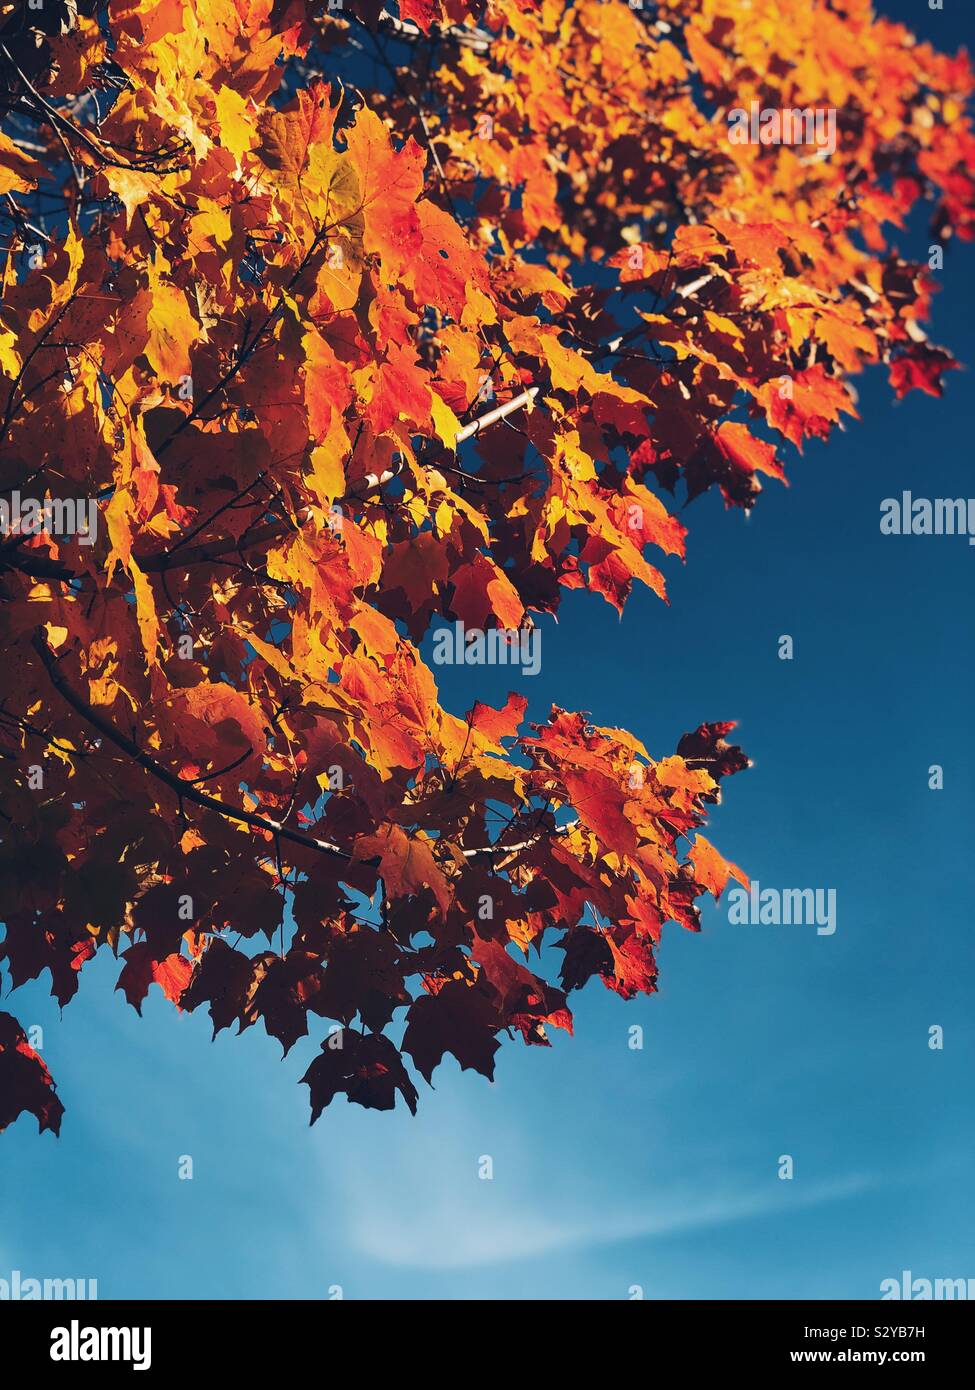 Rouge, orange et jaune feuilles d'un arbre d'automne contre le fond de ciel bleu Banque D'Images